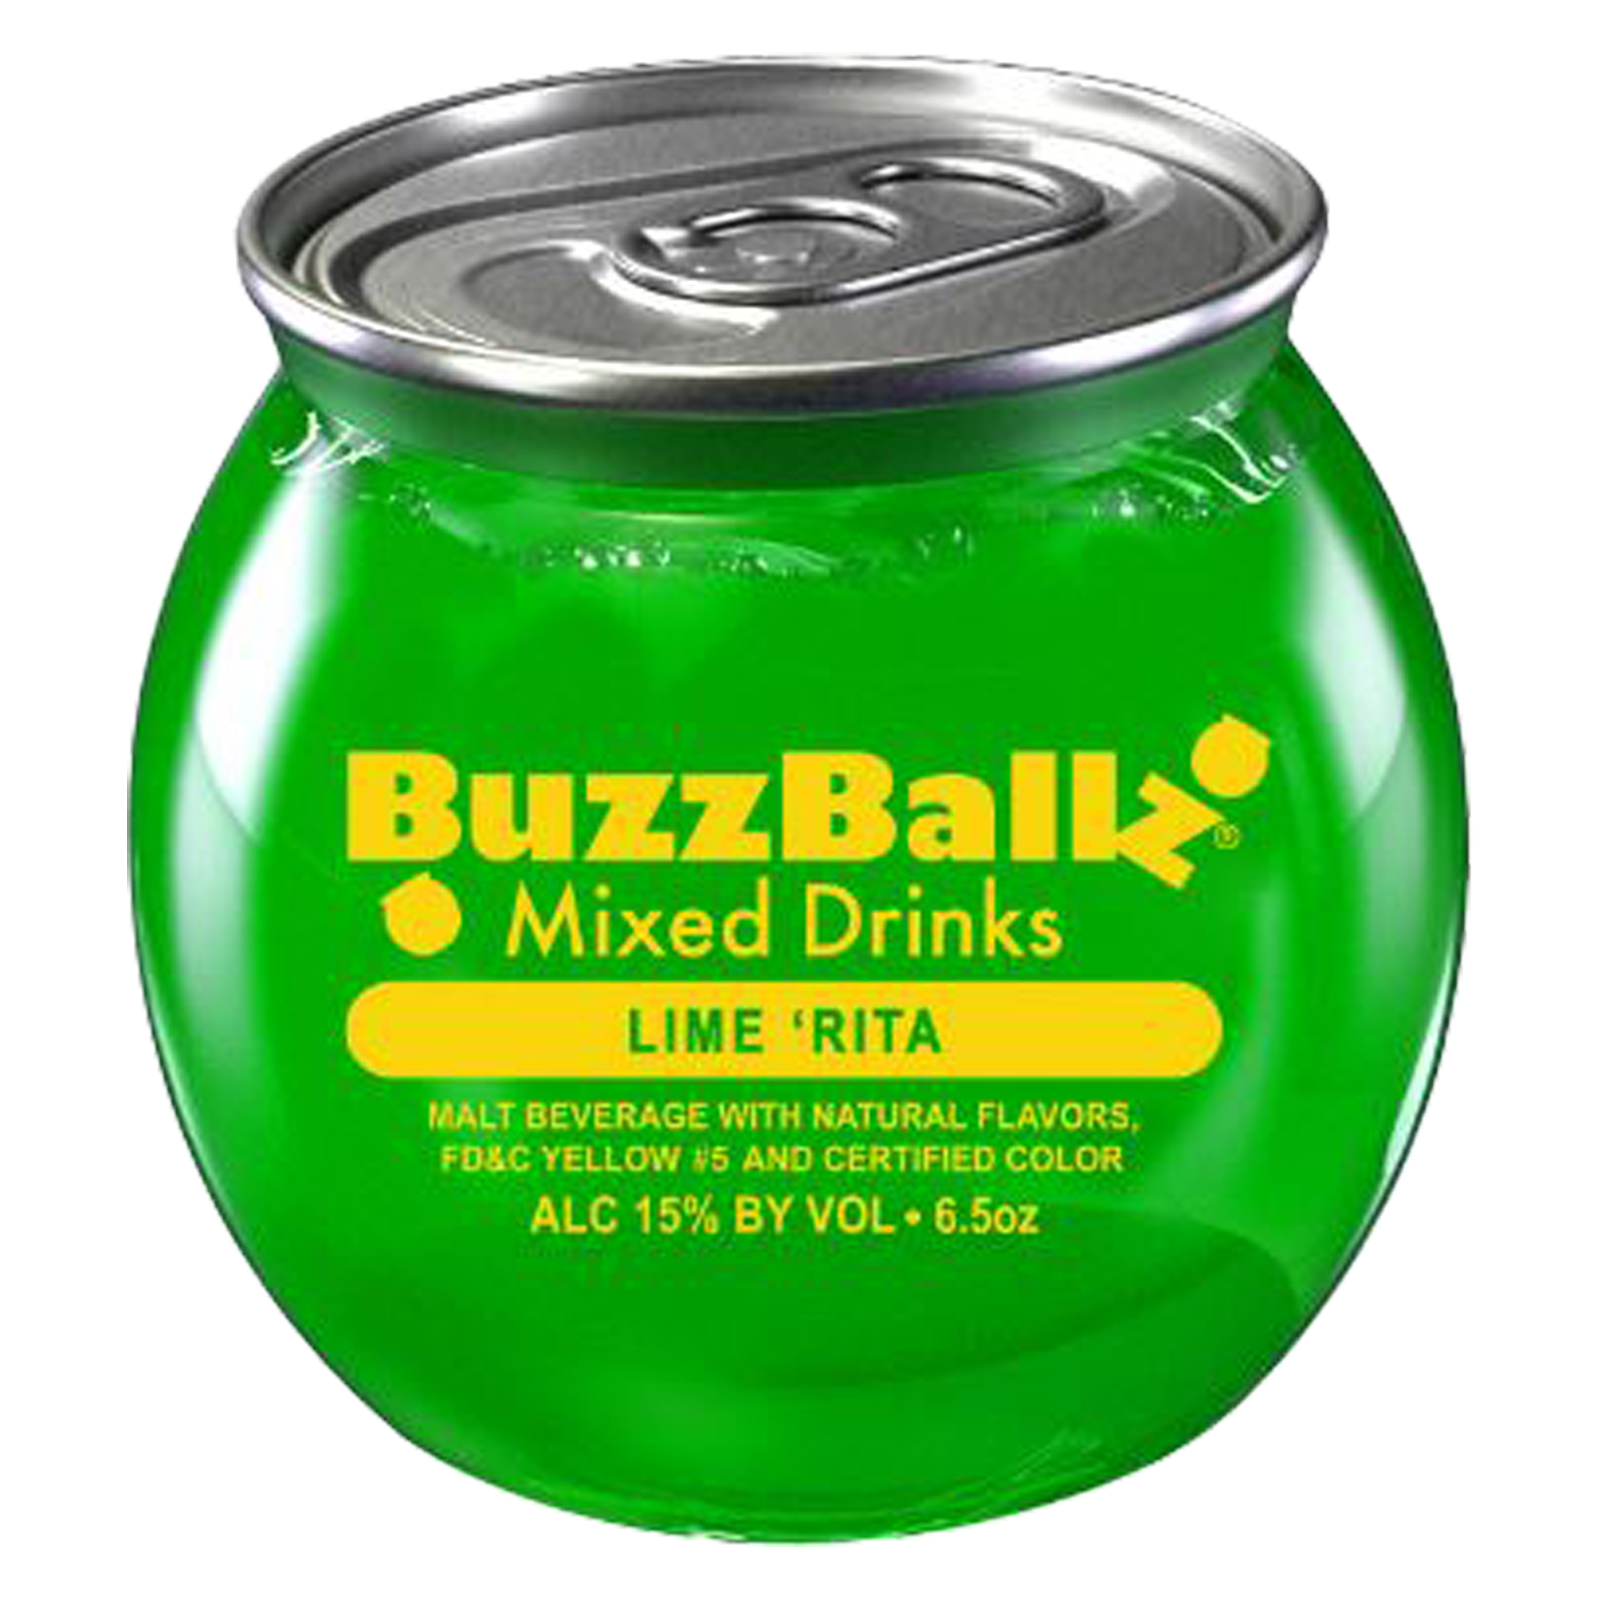 BuzzBallz Lime 'Rita Single 6.5oz Can 15% ABV